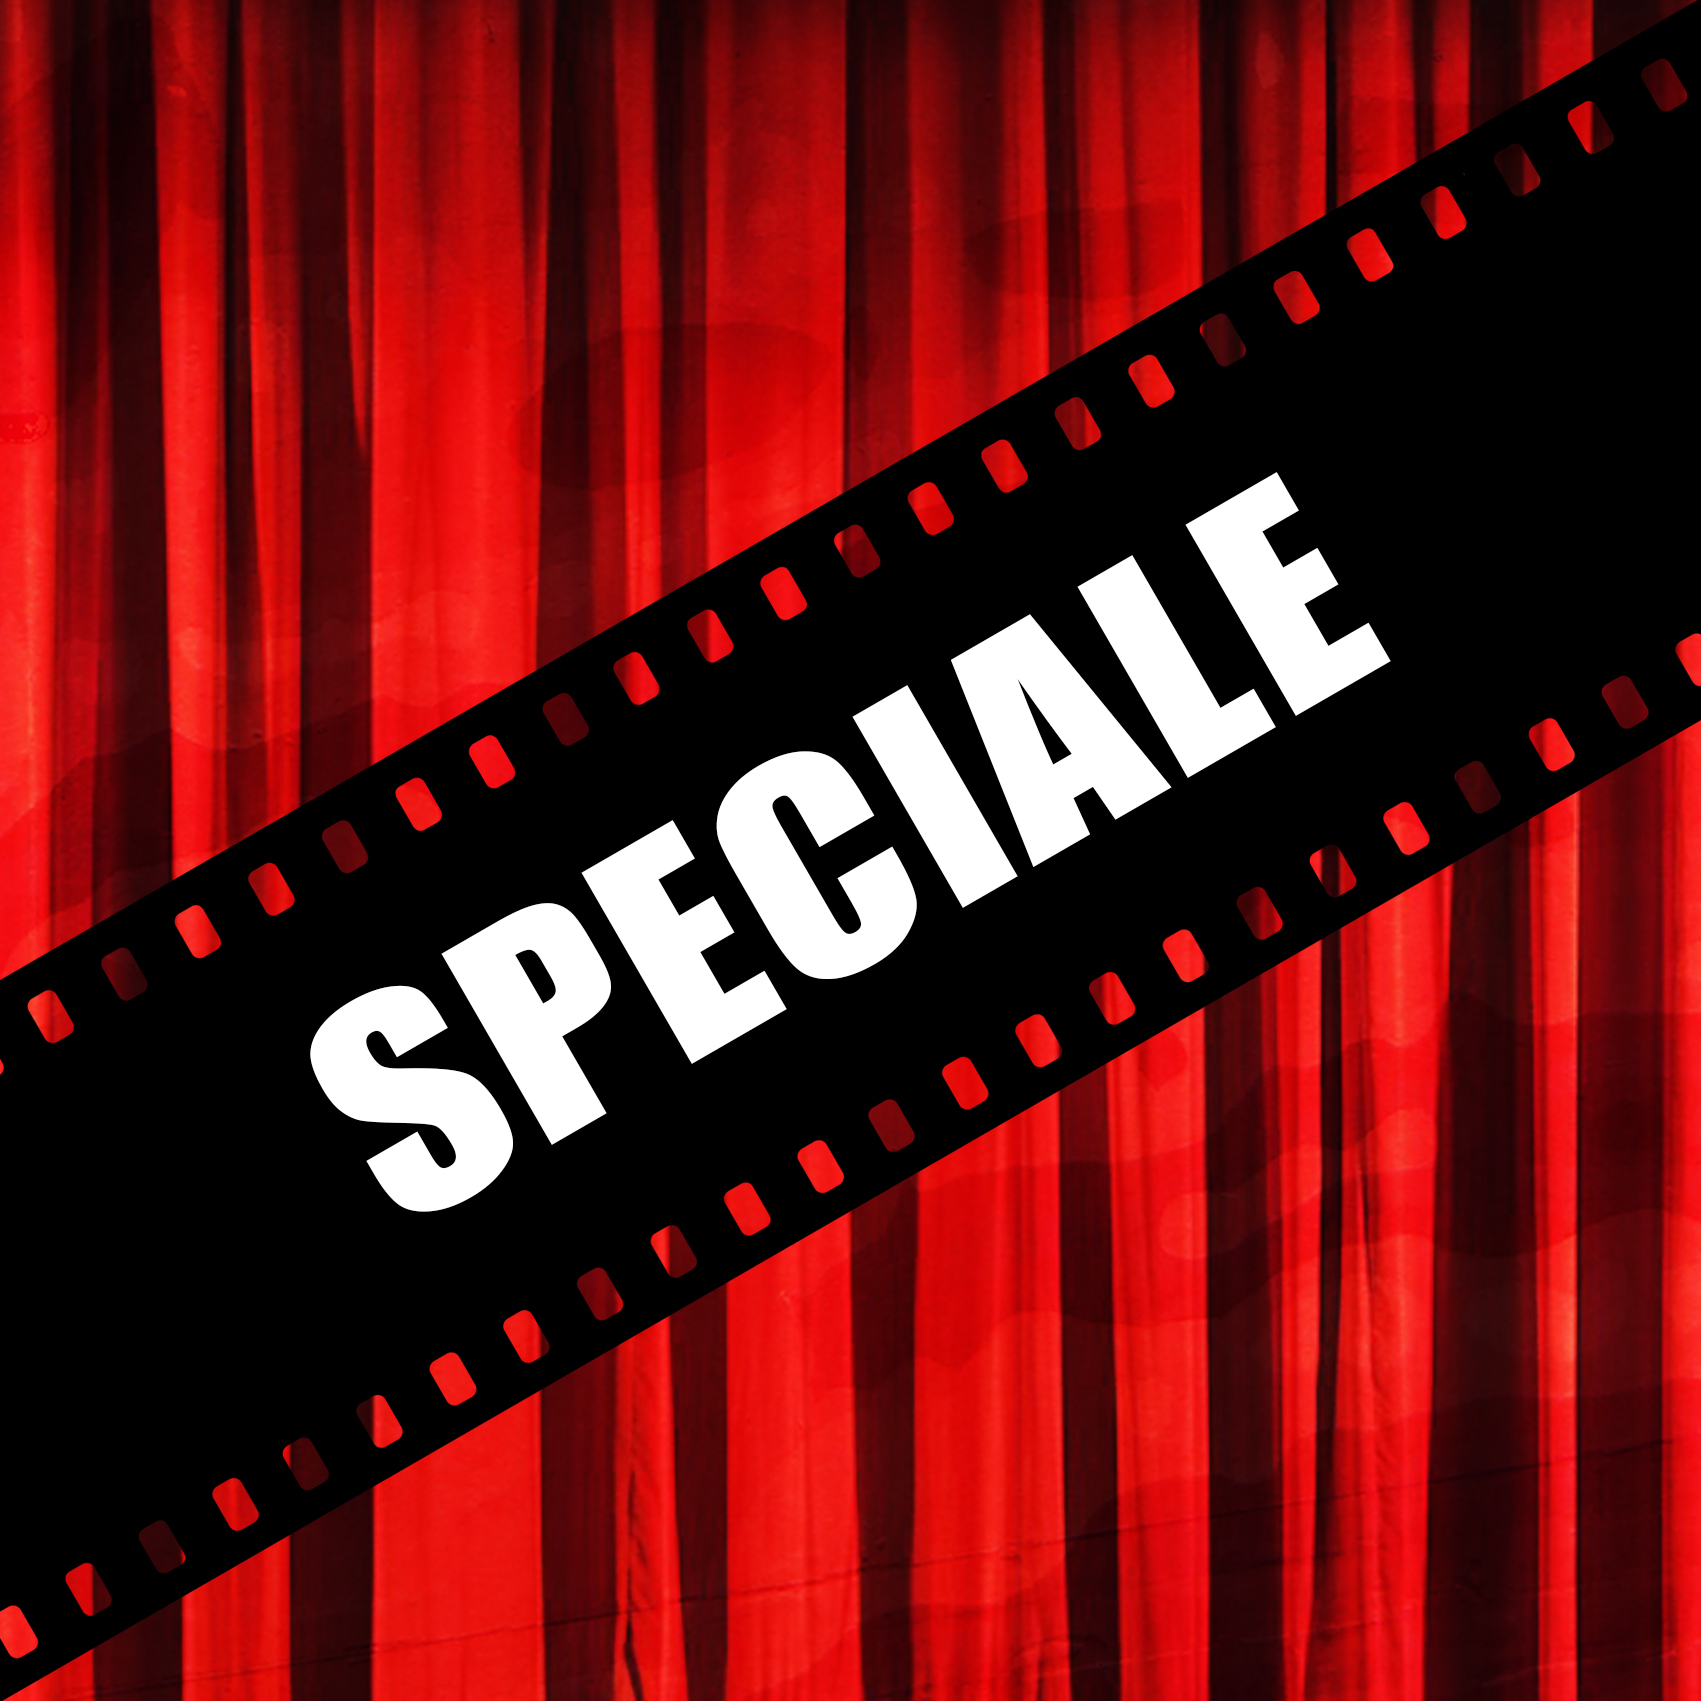 cinema-teatro-elios-carmagnola-speciale